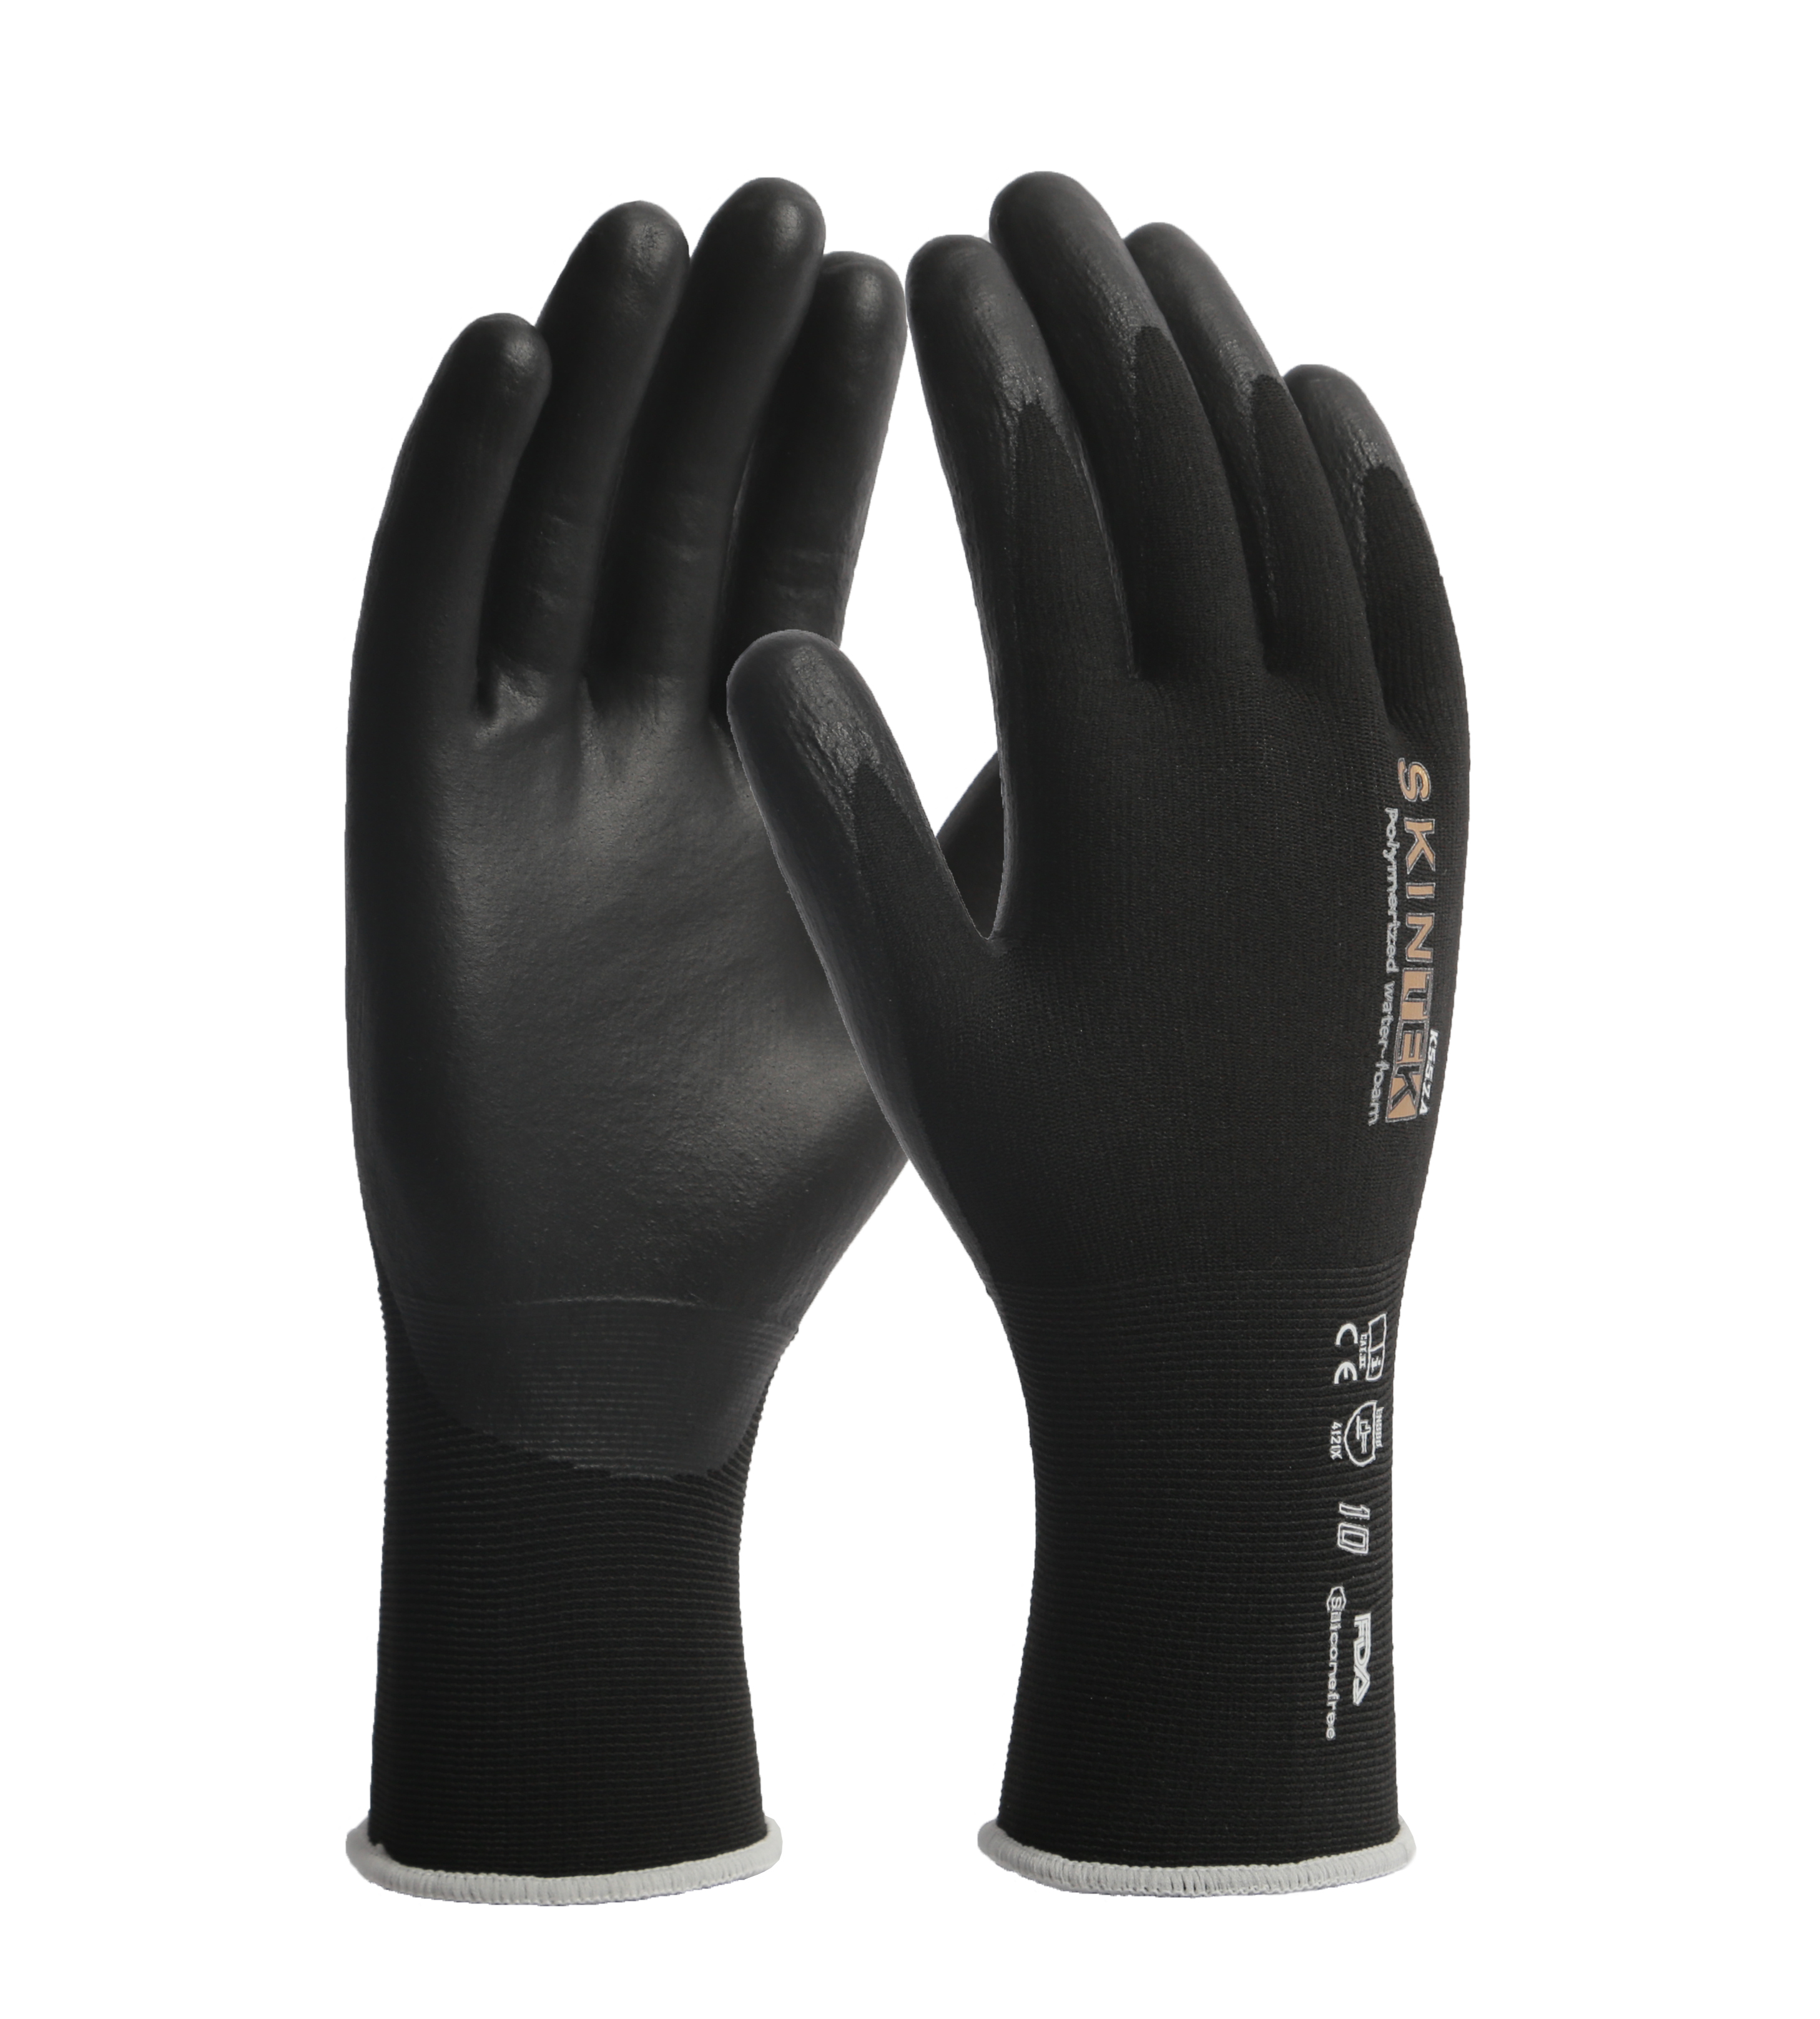 SKINTEK-K552A glove